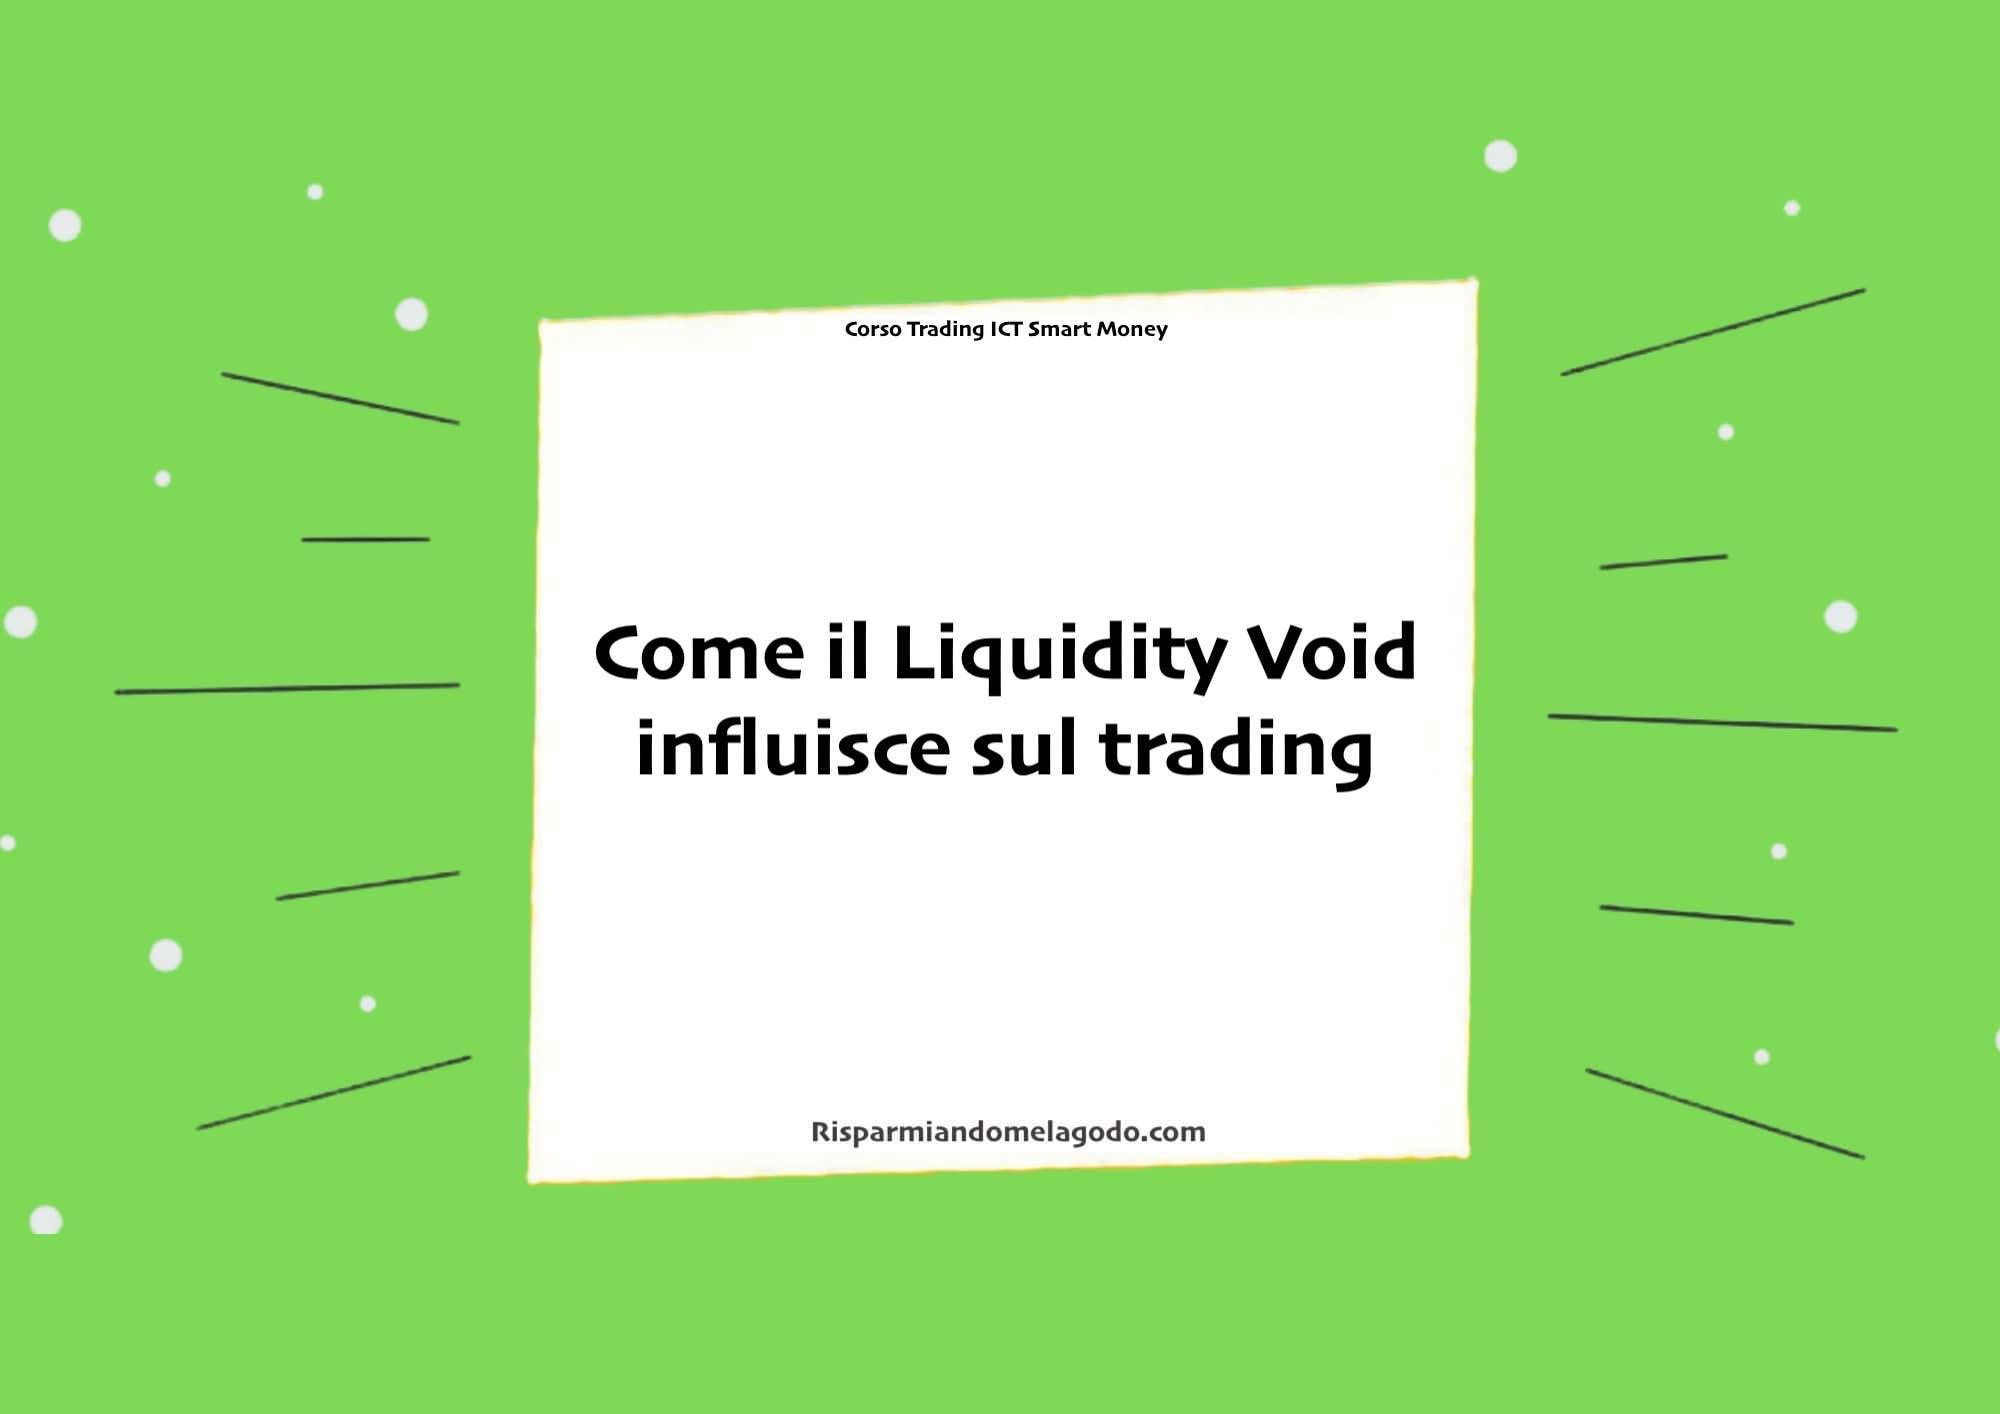 Come il Liquidity Void influisce sul trading